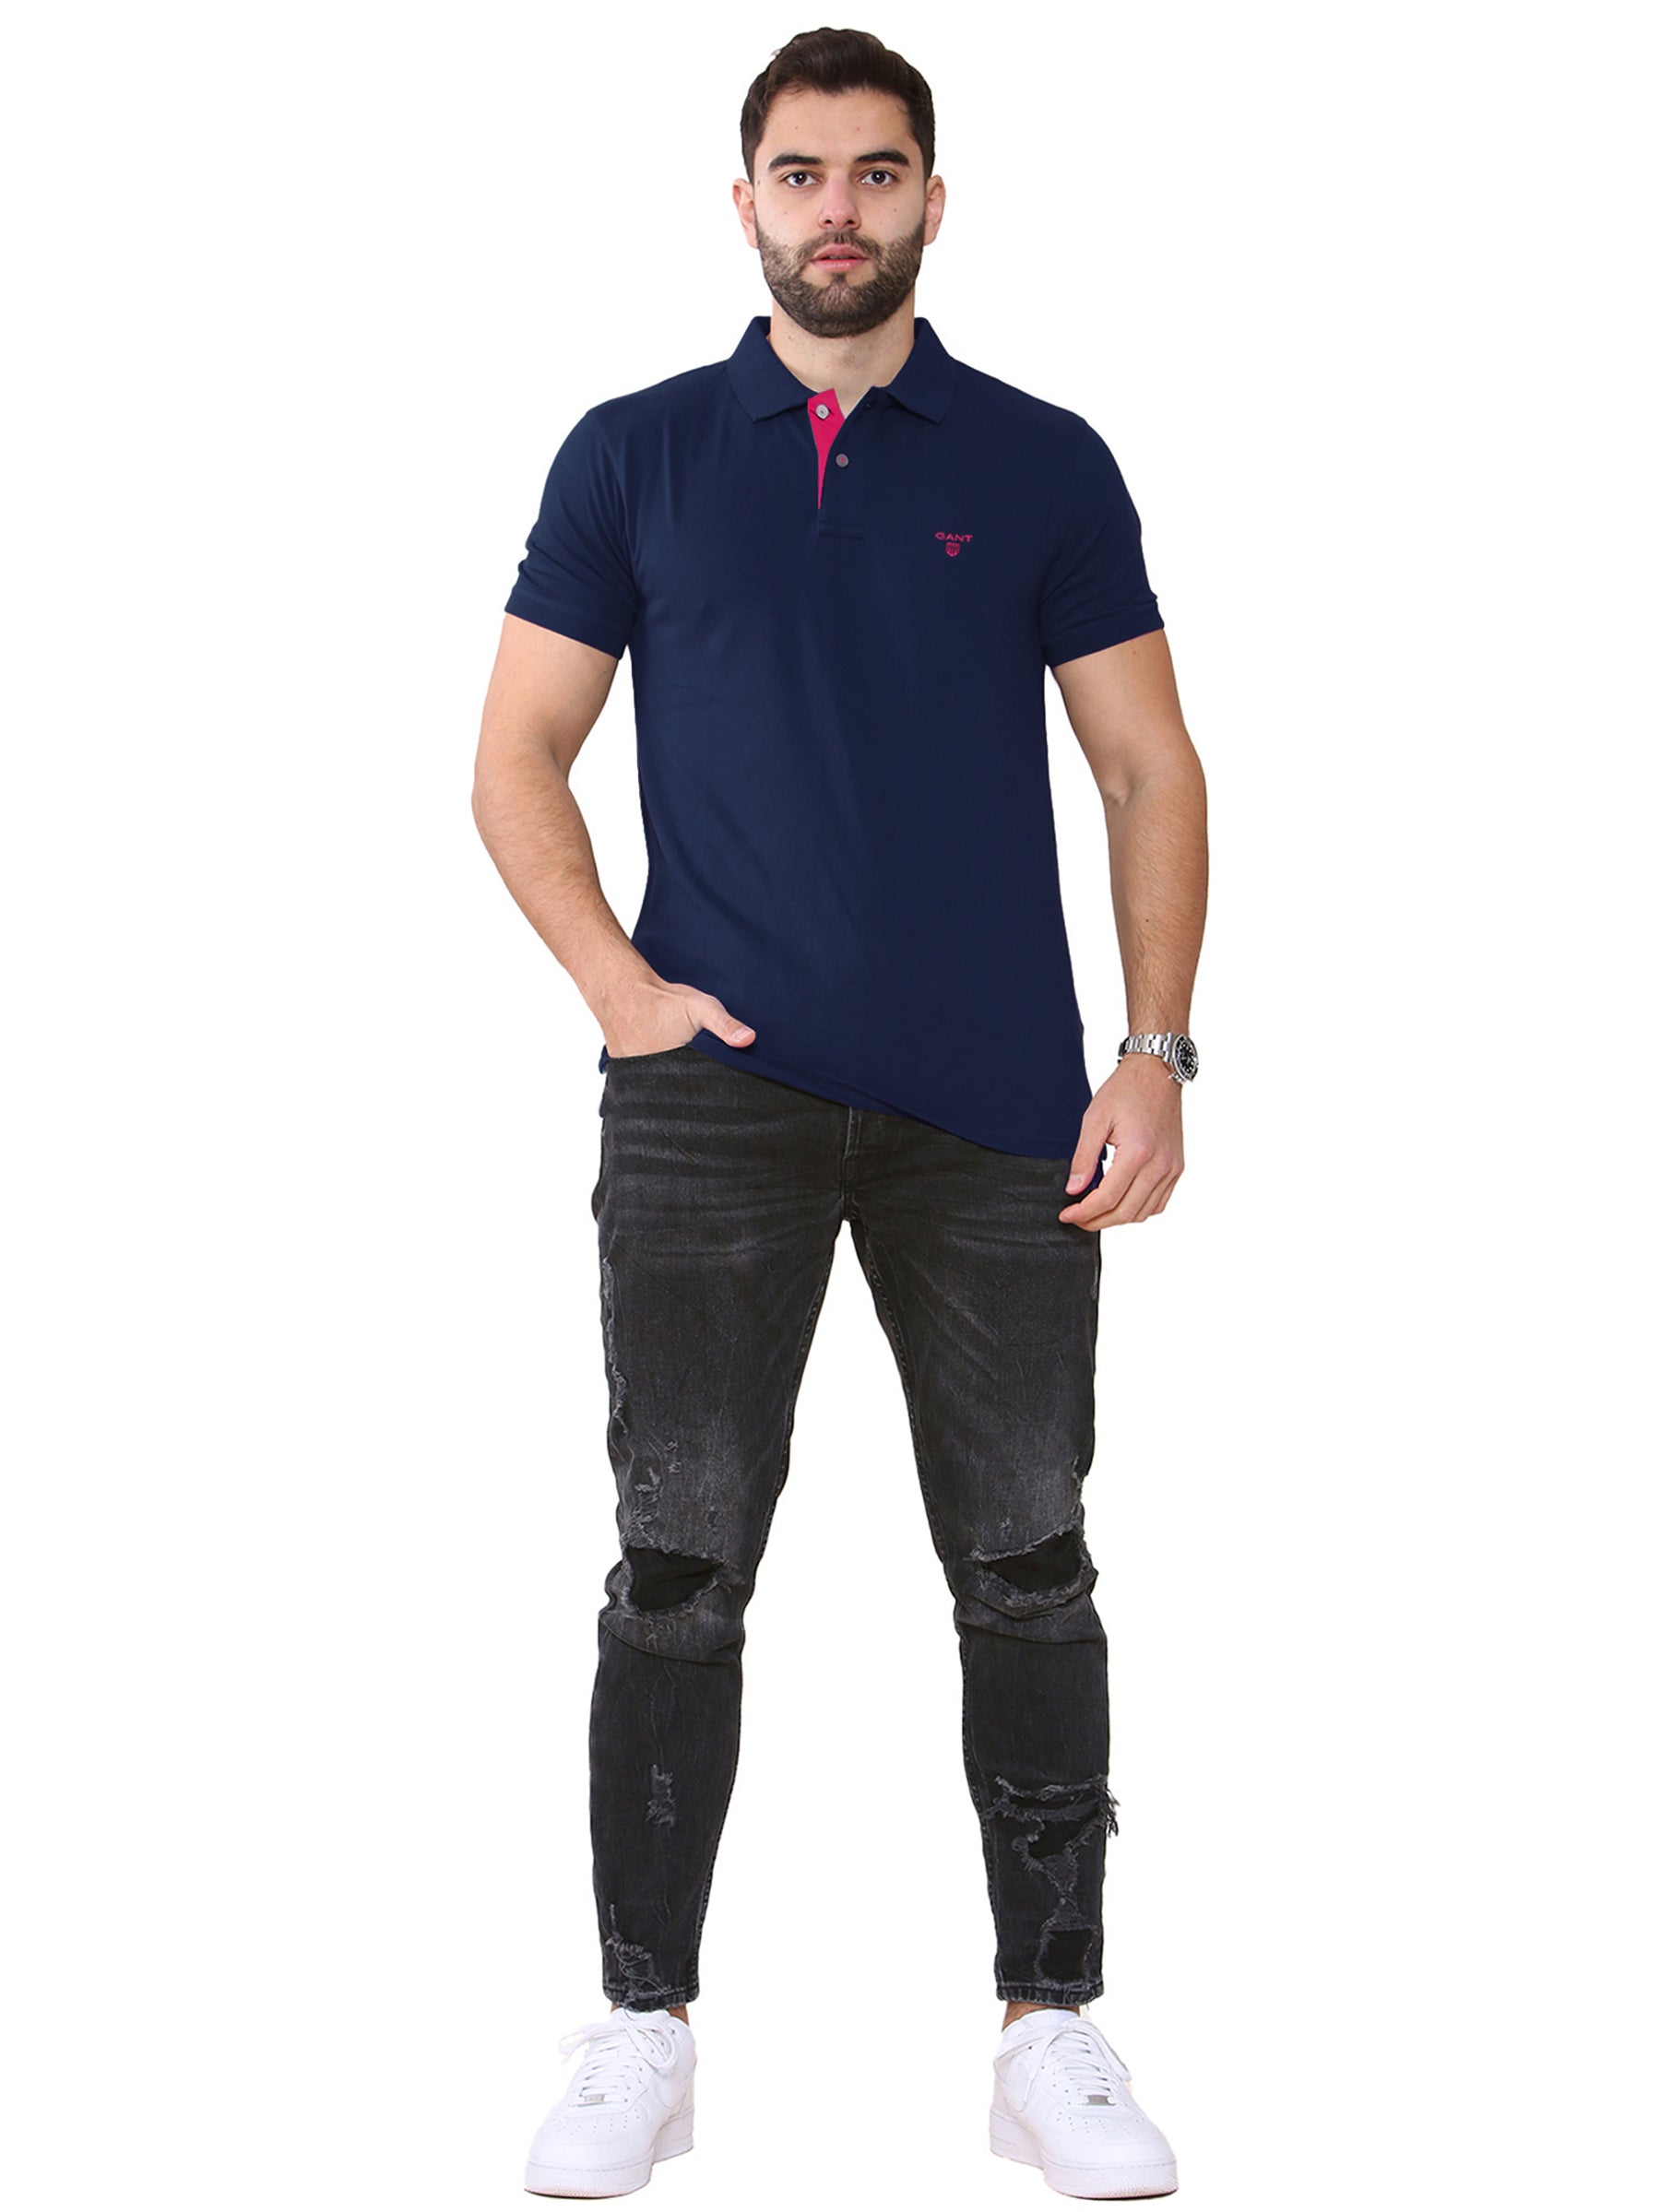 GANT_POLO_CNTR Gant | Mens Contrast Collar Polo Shirt GANT RAWDENIM